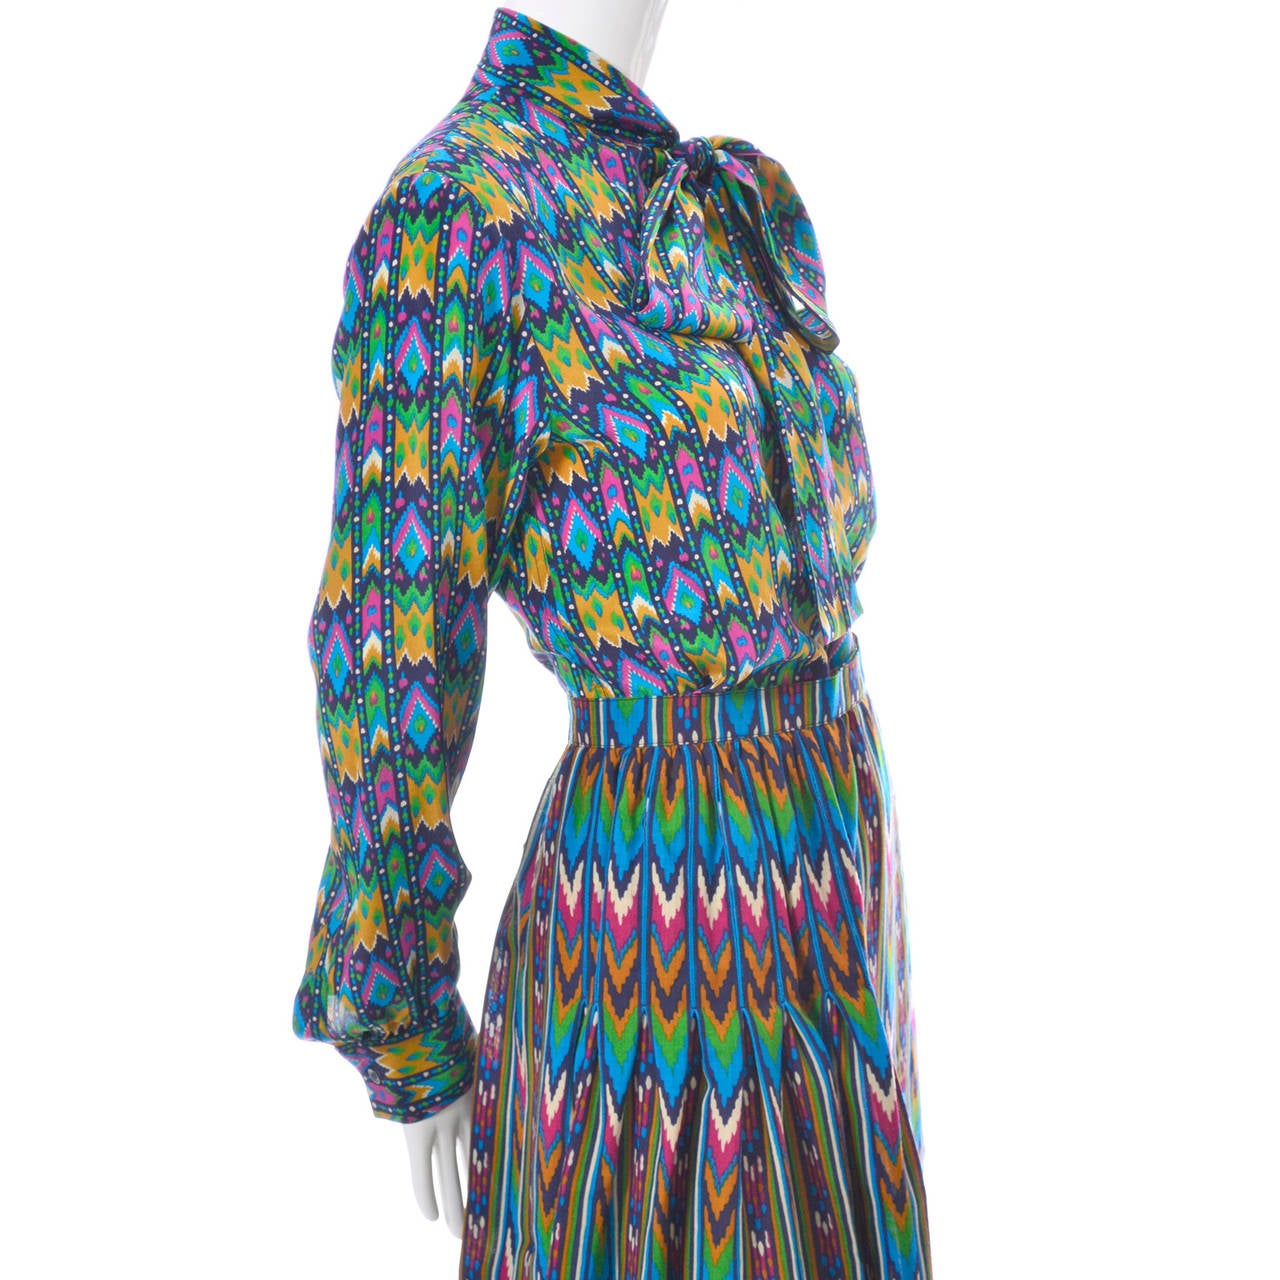 Women's 1970s YSL Vintage Dress Yves Saint Laurent 2 pc Silk Skirt Blouse Mint Condition